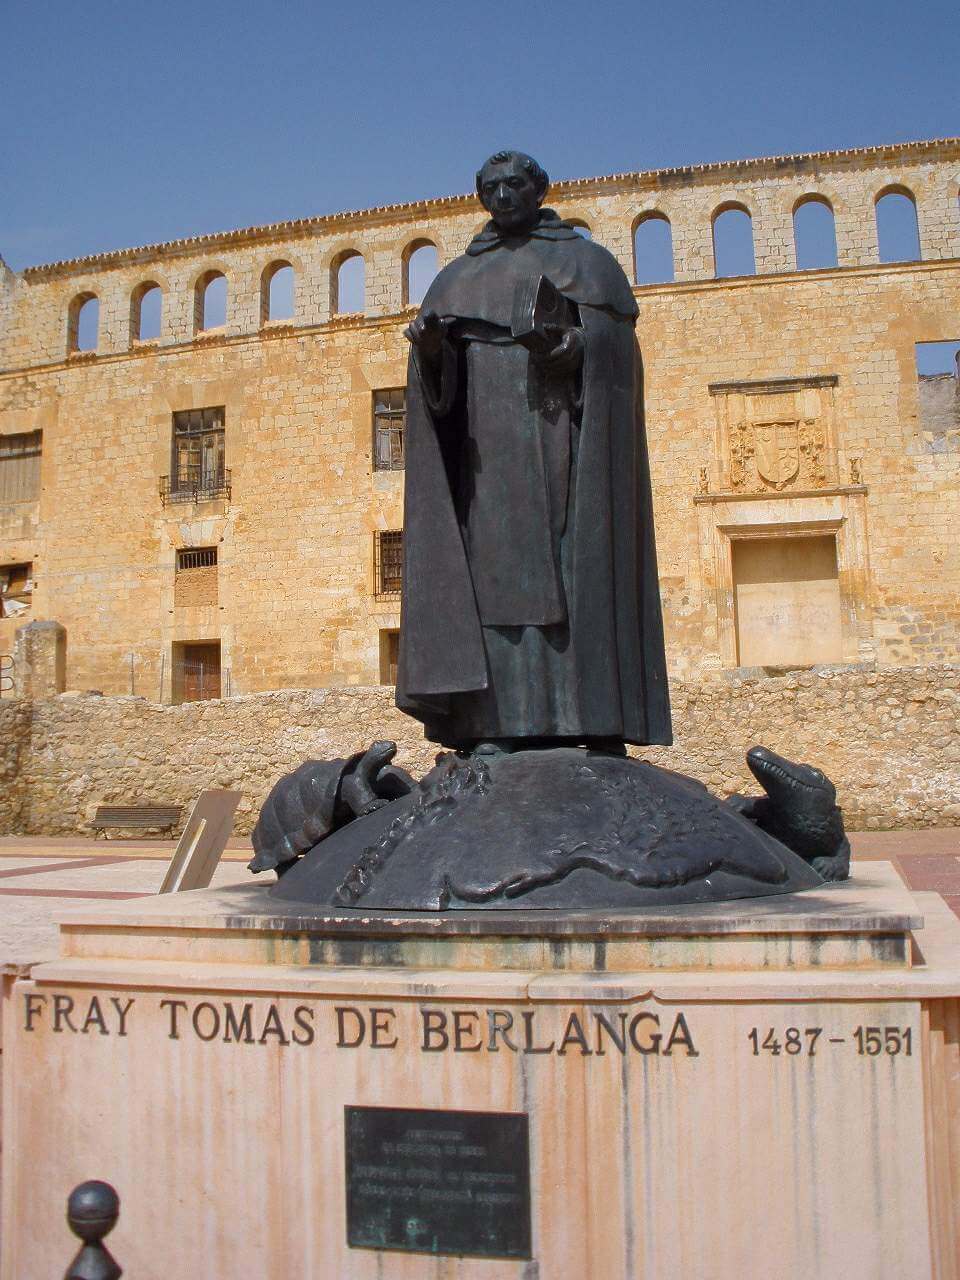 Tomas de Berlanga's statue